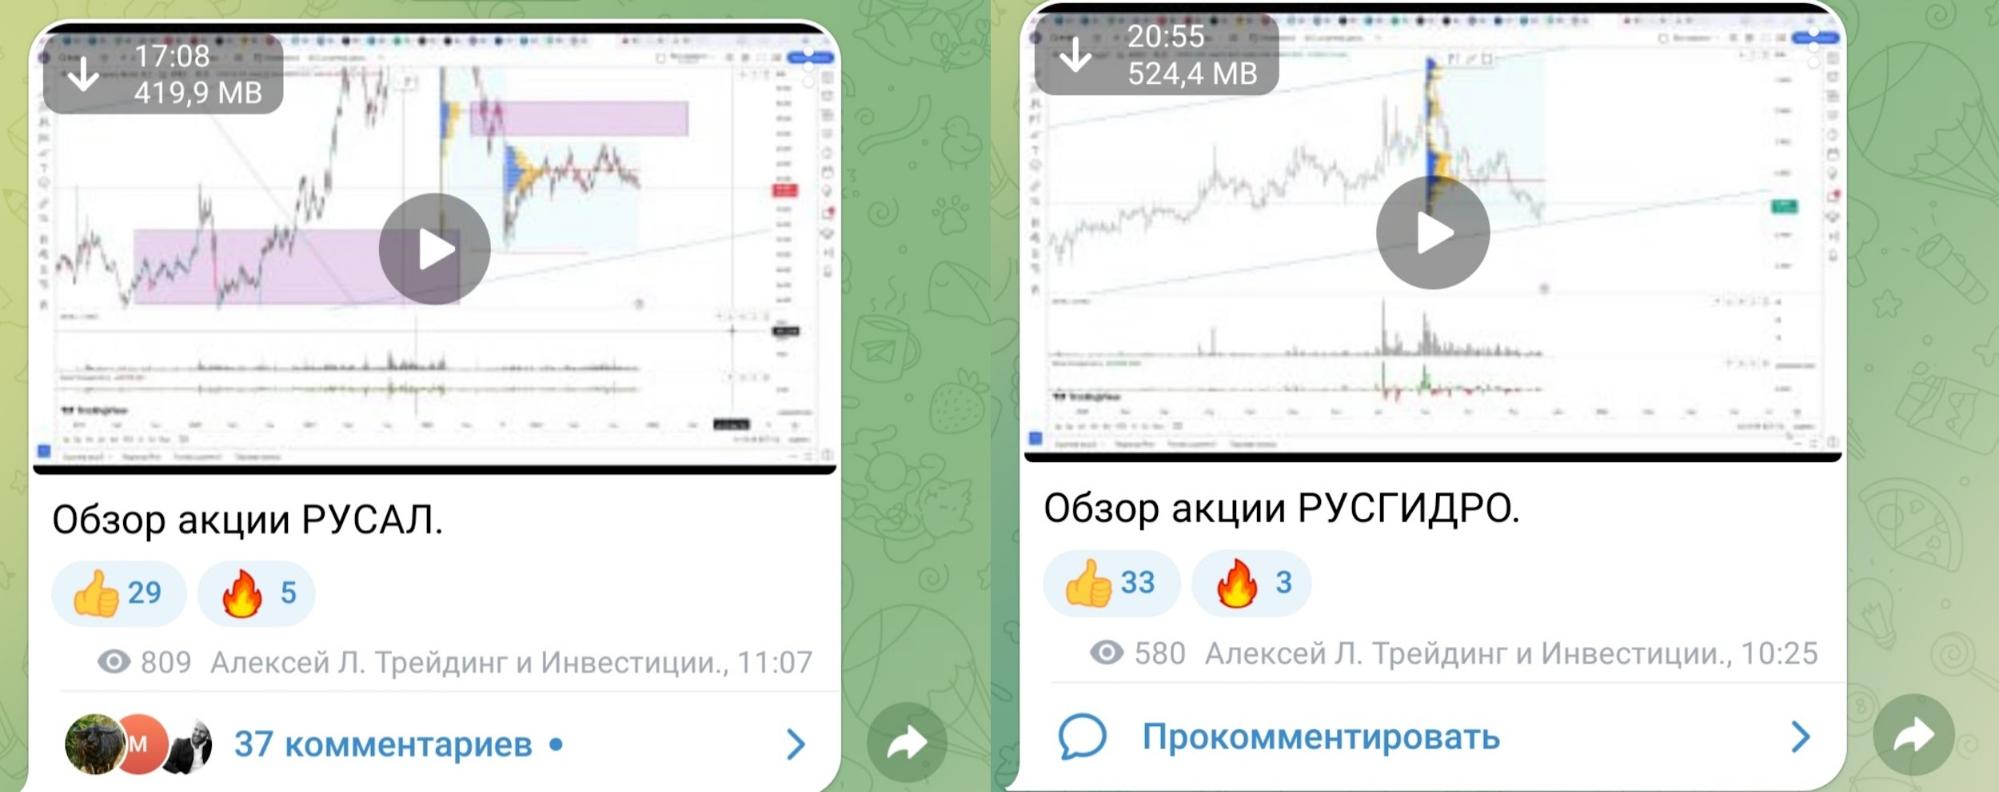 Алексей Л Трейдинг и Инвестиции телеграм